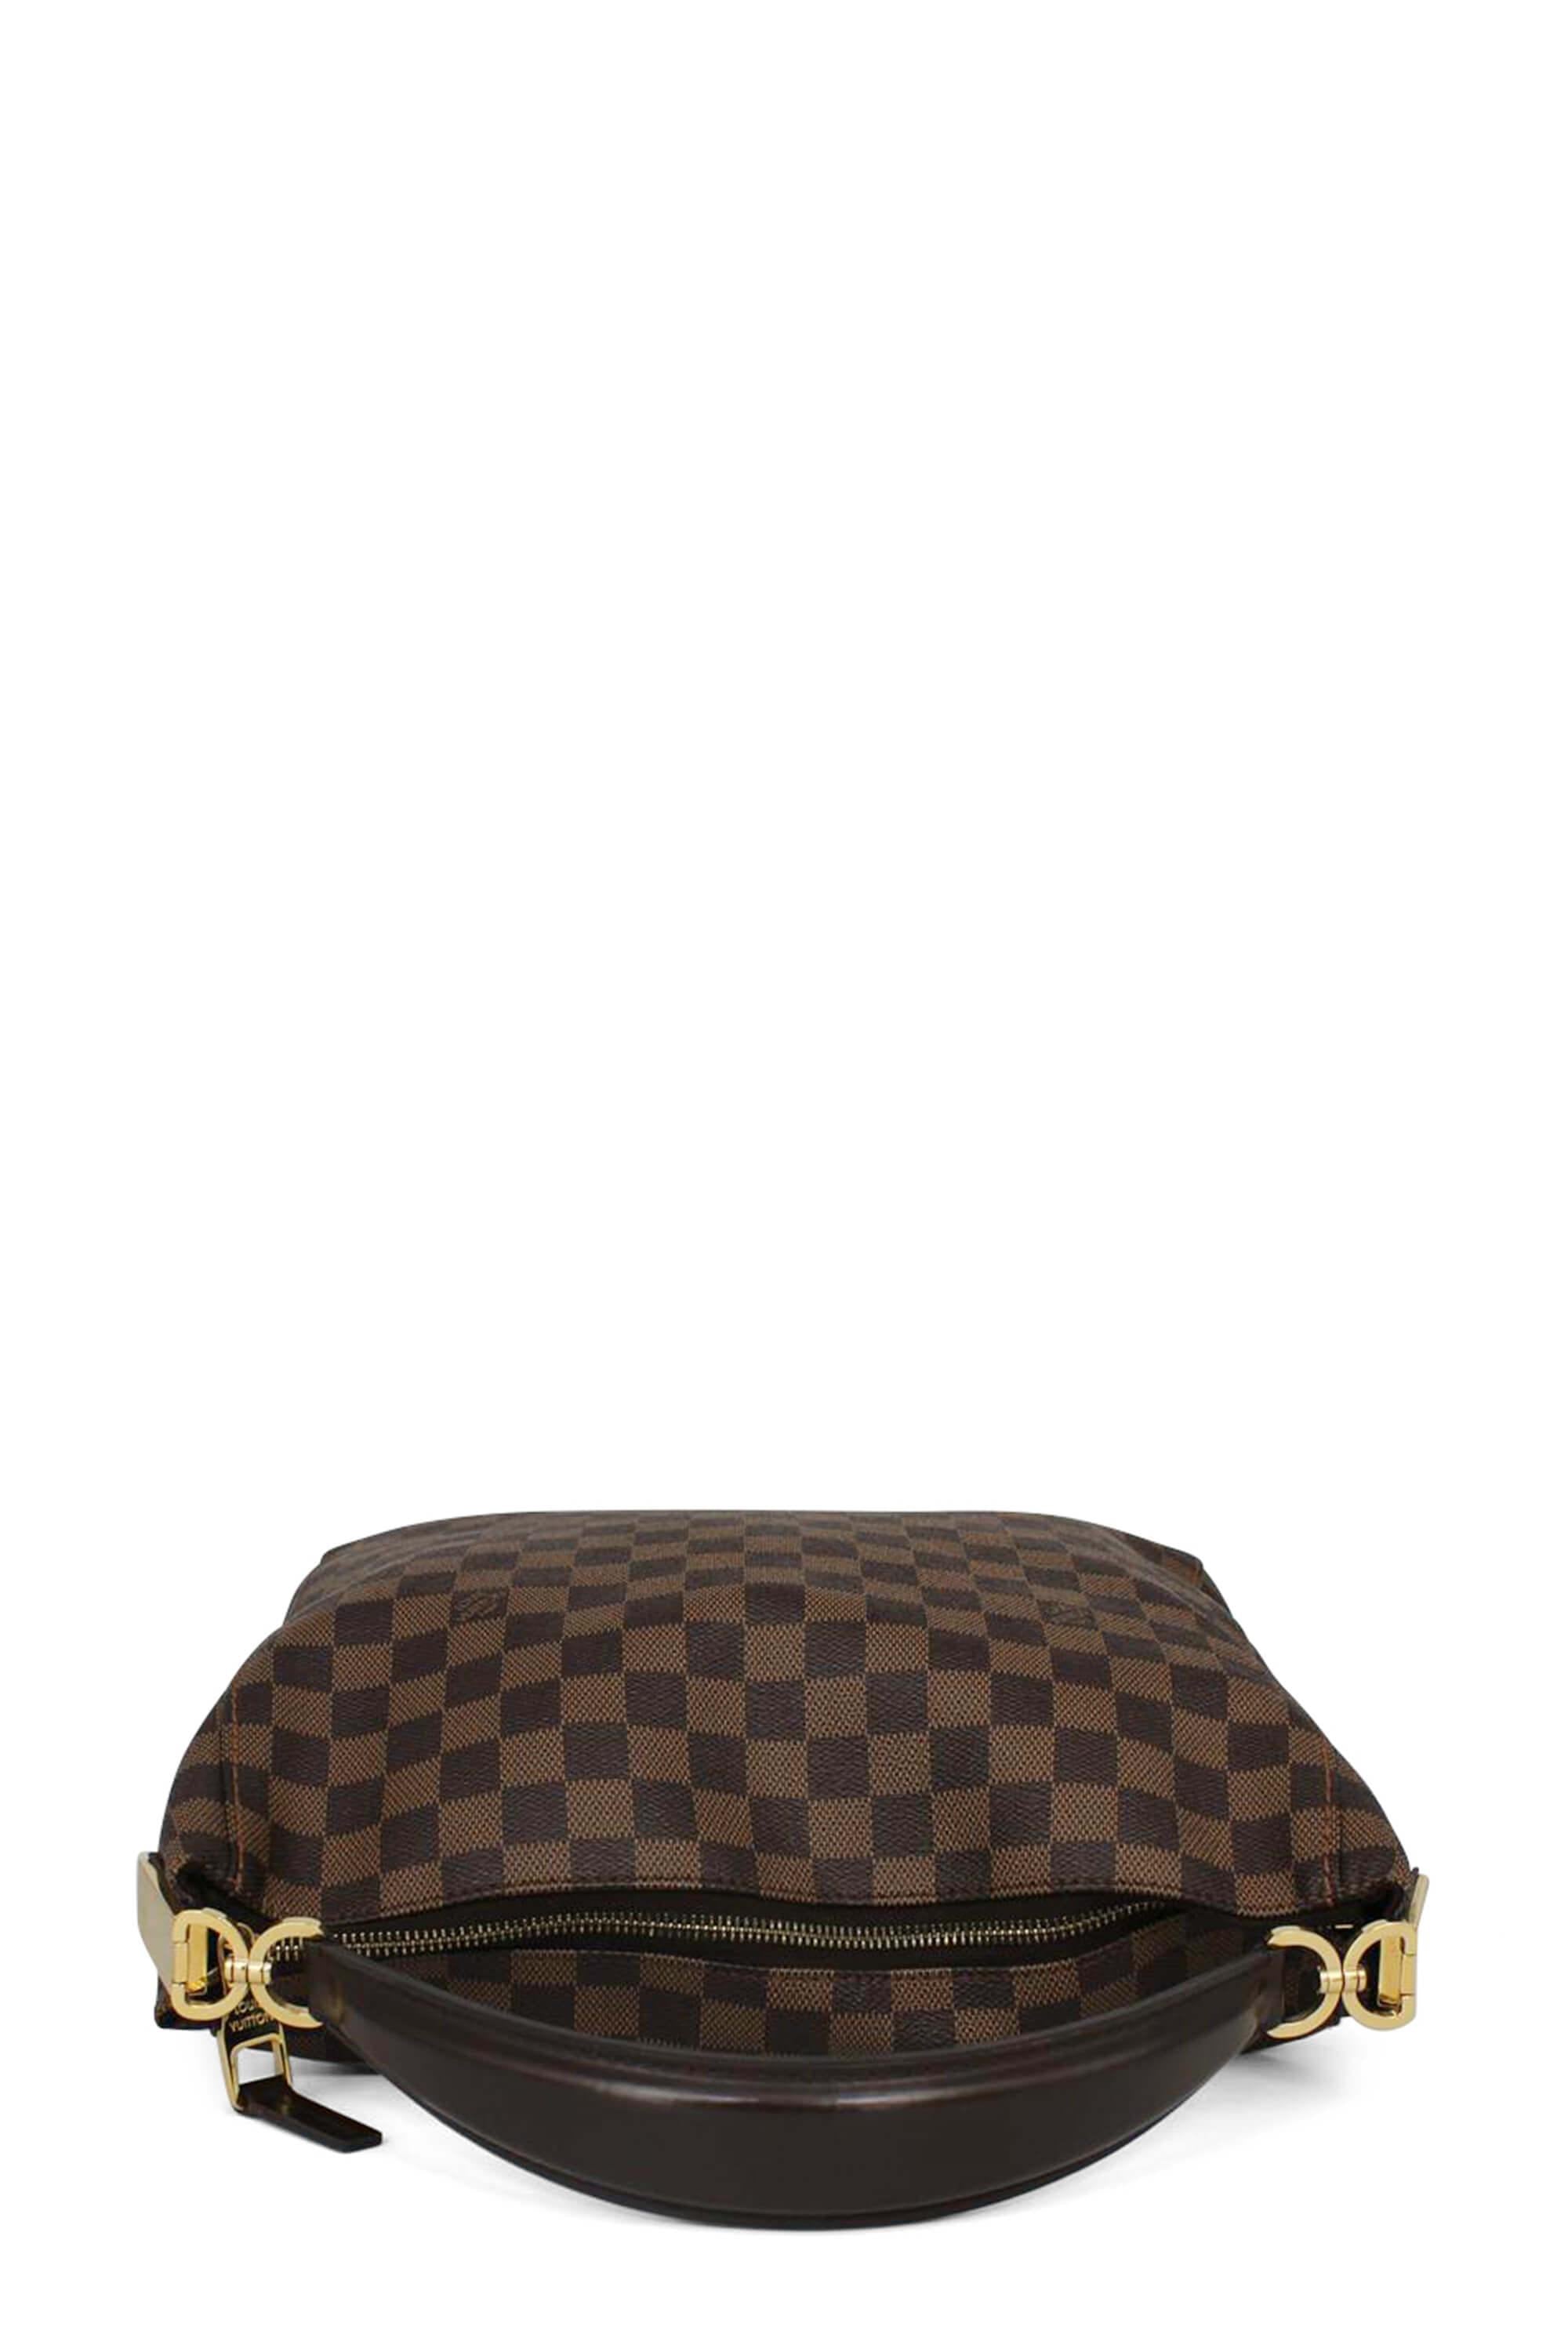 Louis Vuitton Portobello PM Ebene Damier, Luxury, Bags & Wallets on  Carousell